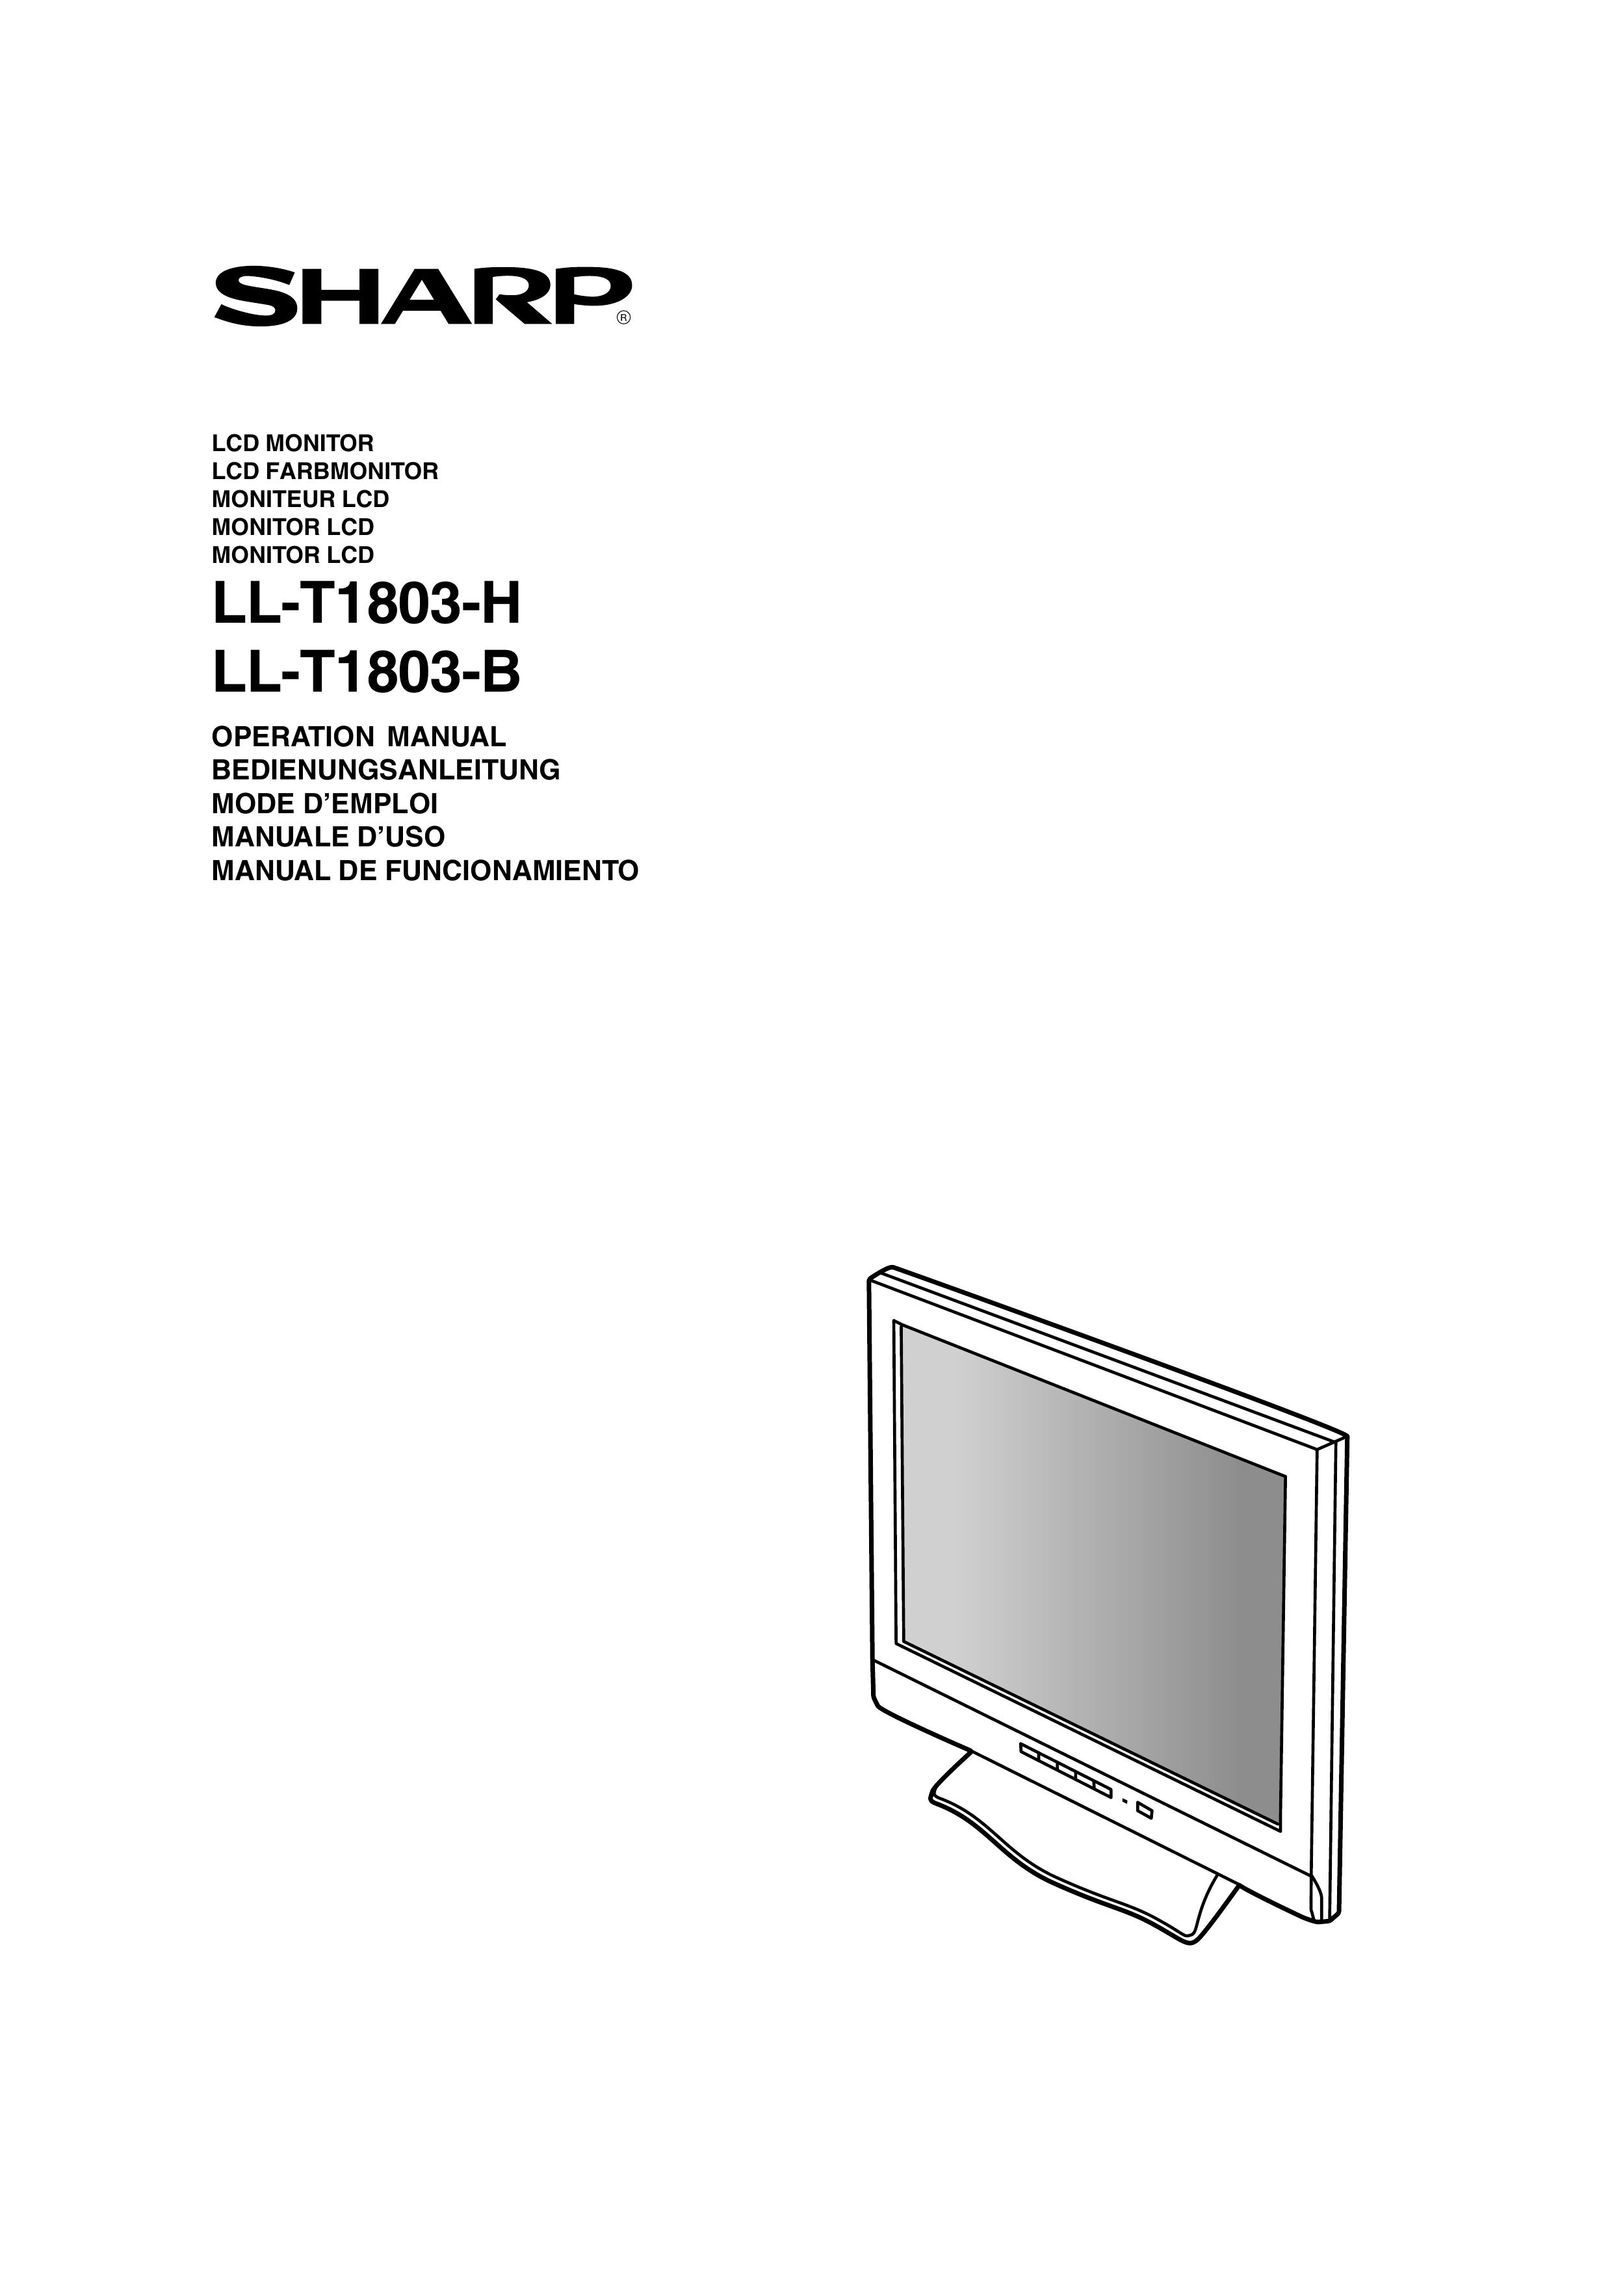 Sharp LL-T1803-H Computer Monitor User Manual